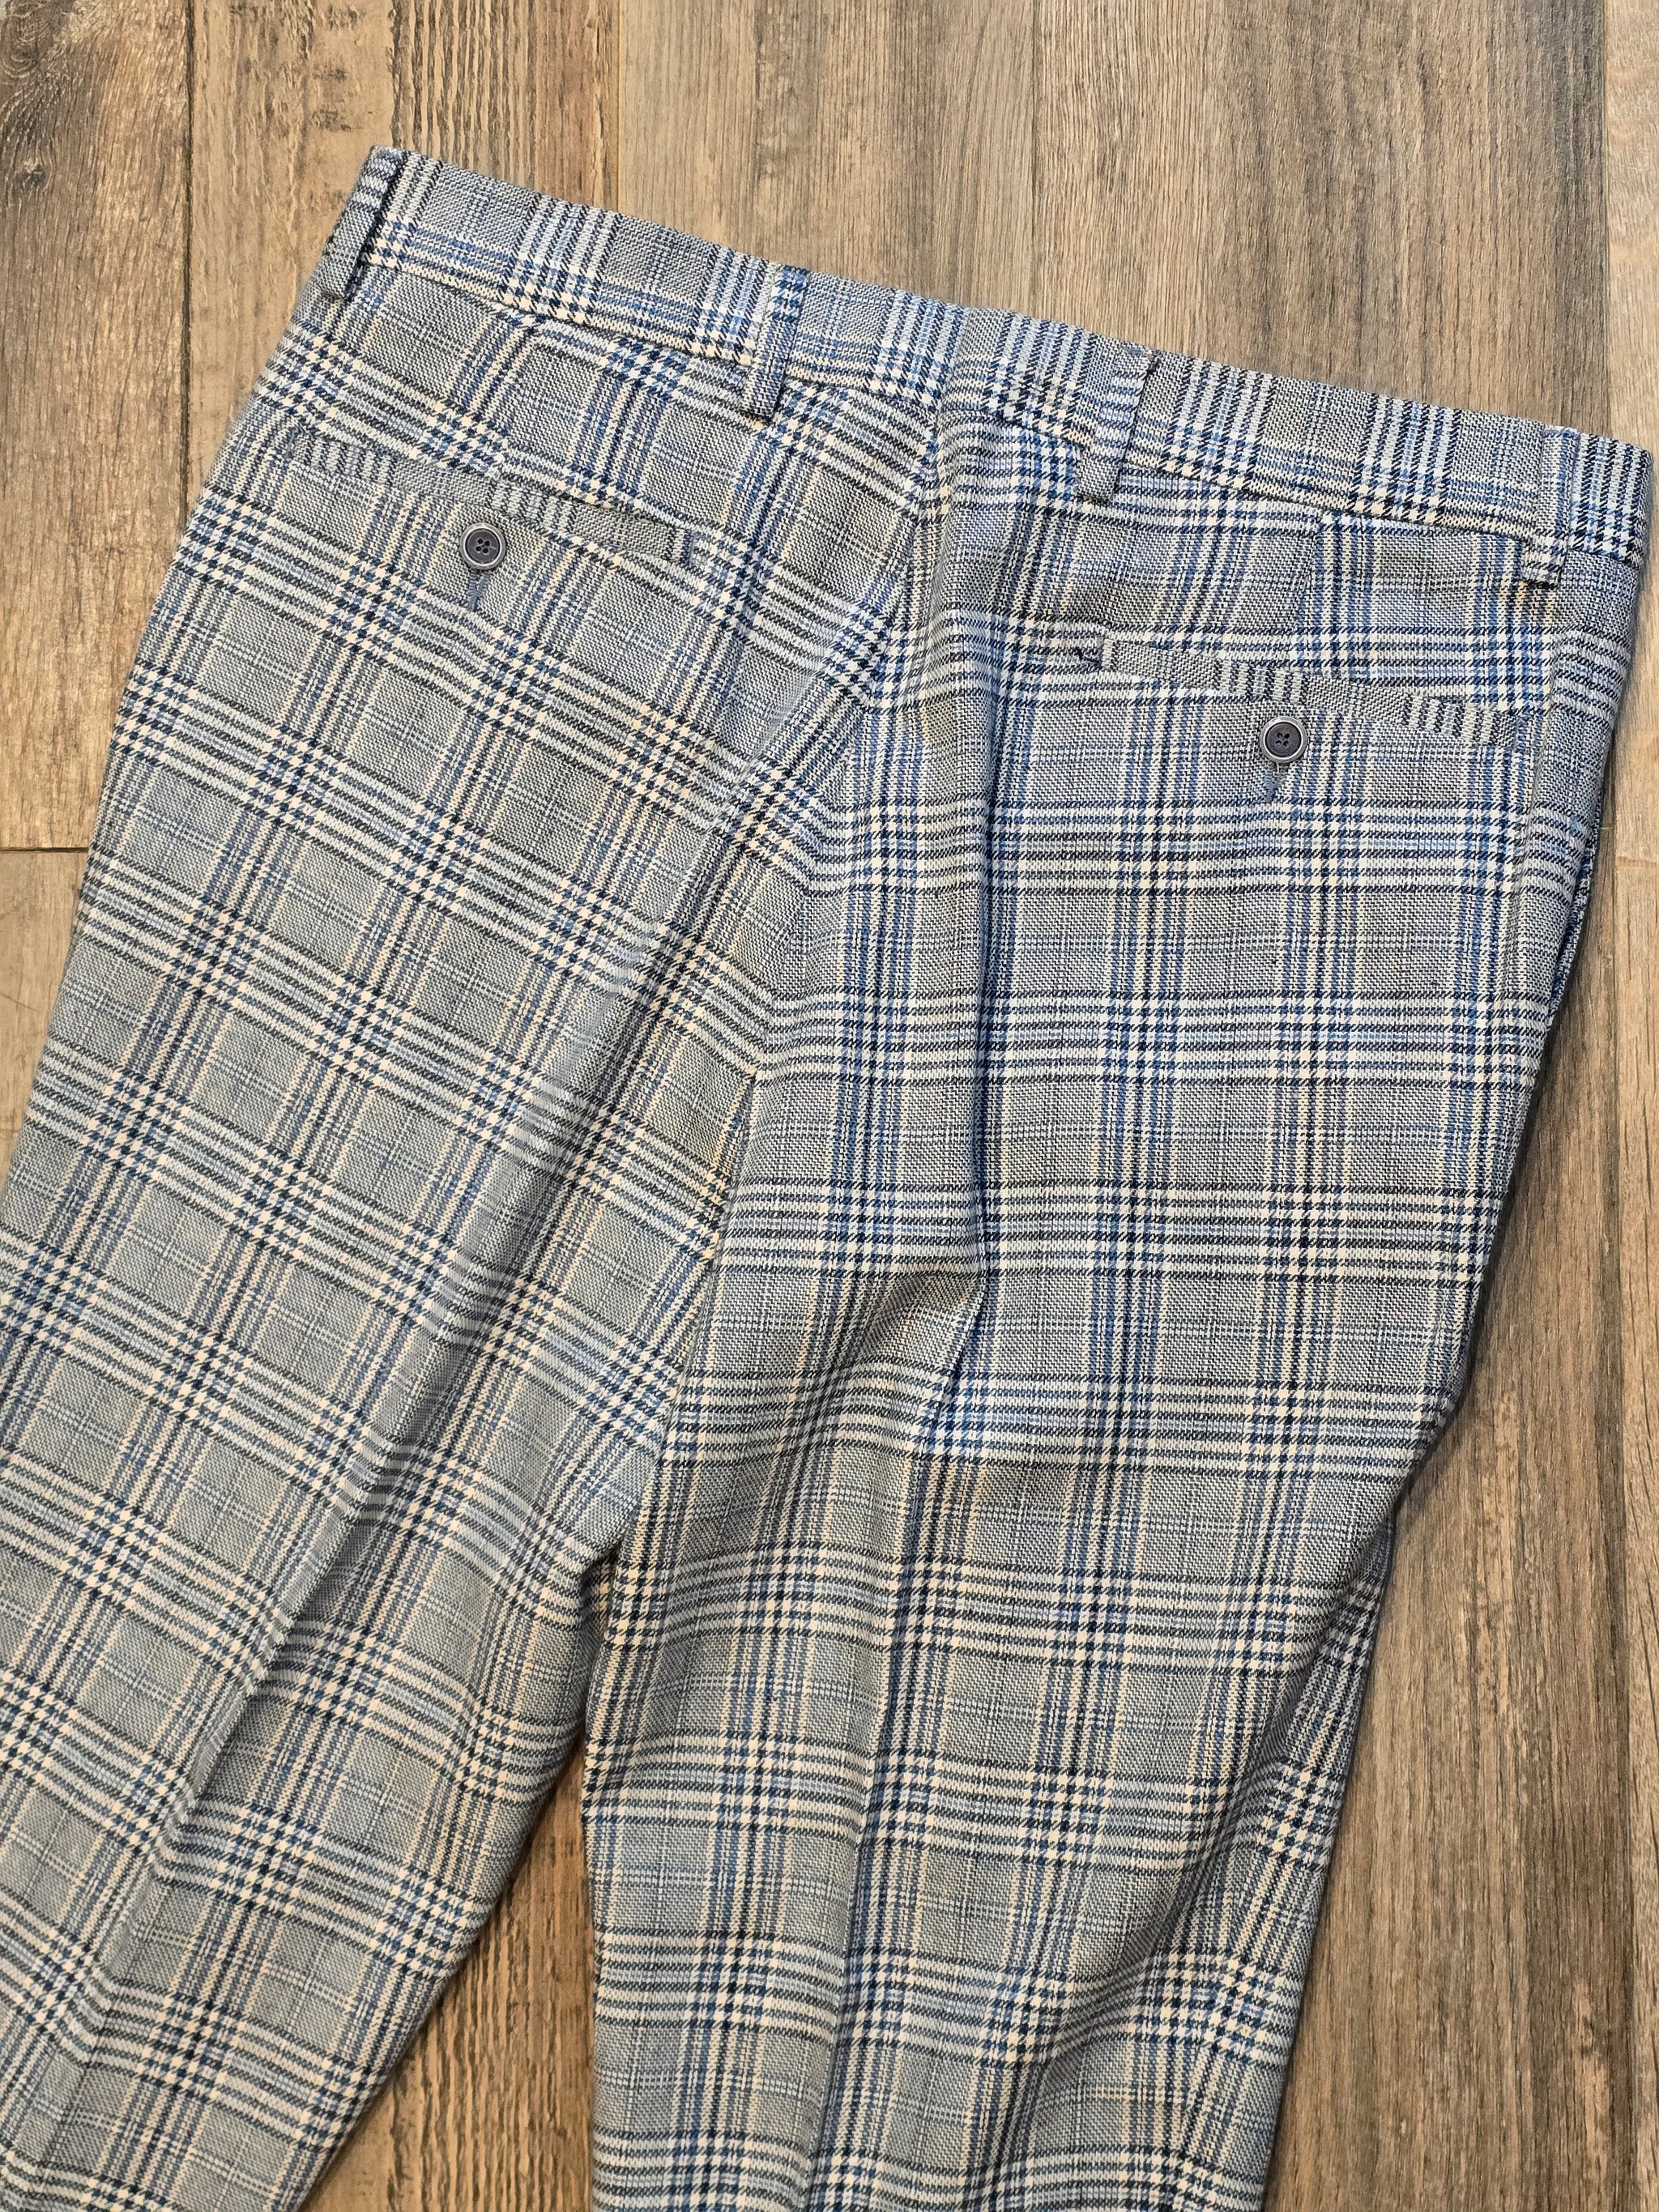 Mazzelli "Lanificio fabric" Cotton/Linen overcheck Trousers